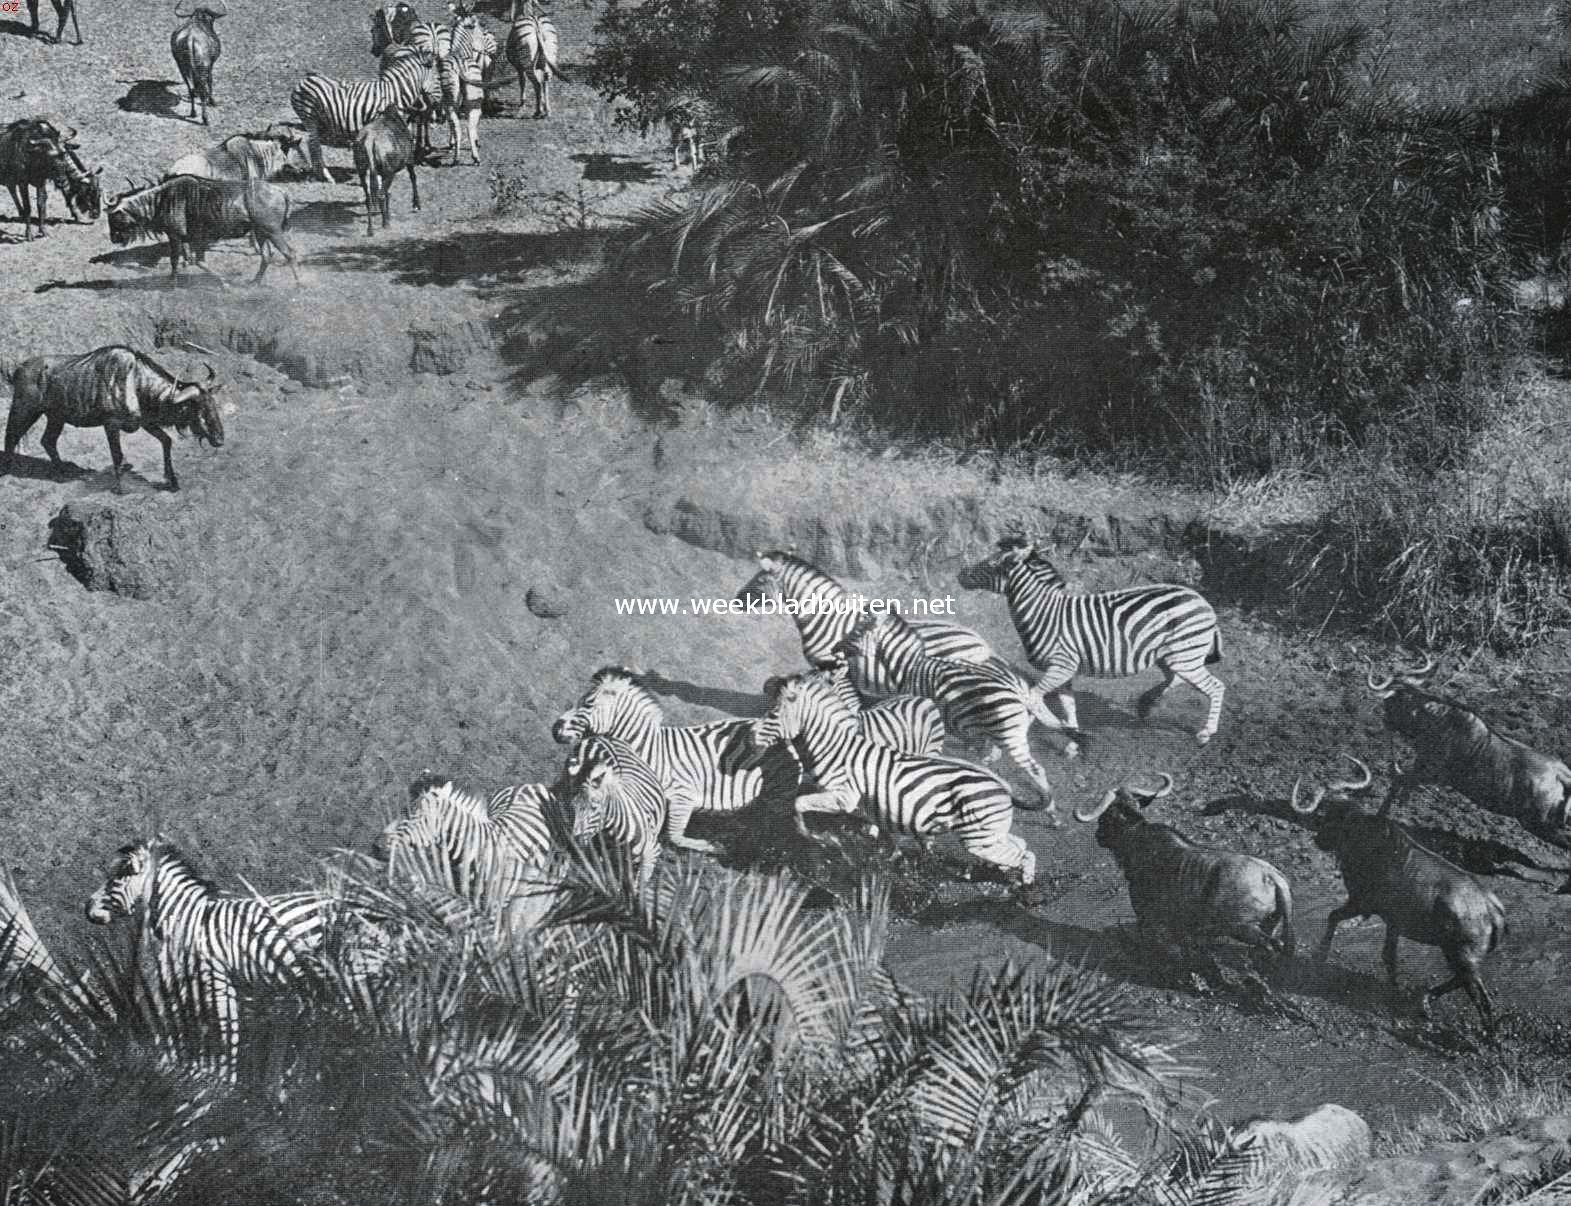 Zuid-Afrika's groot wild. Zebra's en wildebeesten, opgeschrikt bij de drinkplaats in het Zuid-Afrikaansche bosveld